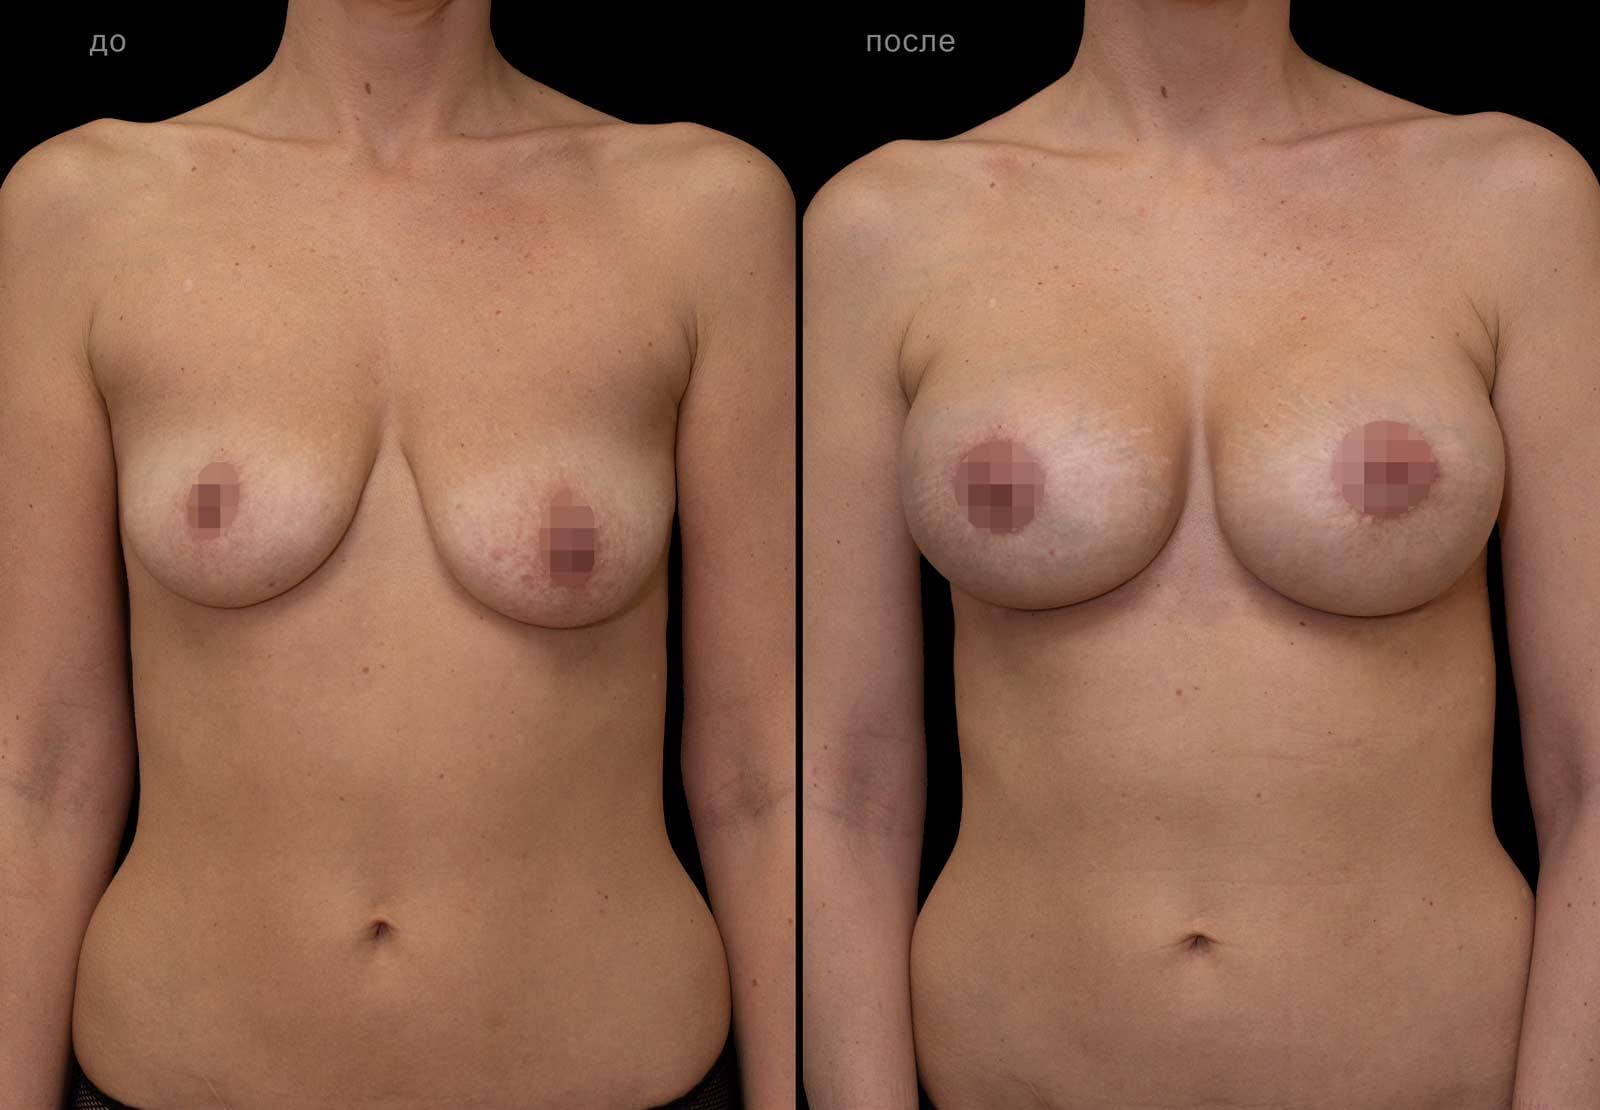 женщин одна грудь меньше другой фото 17